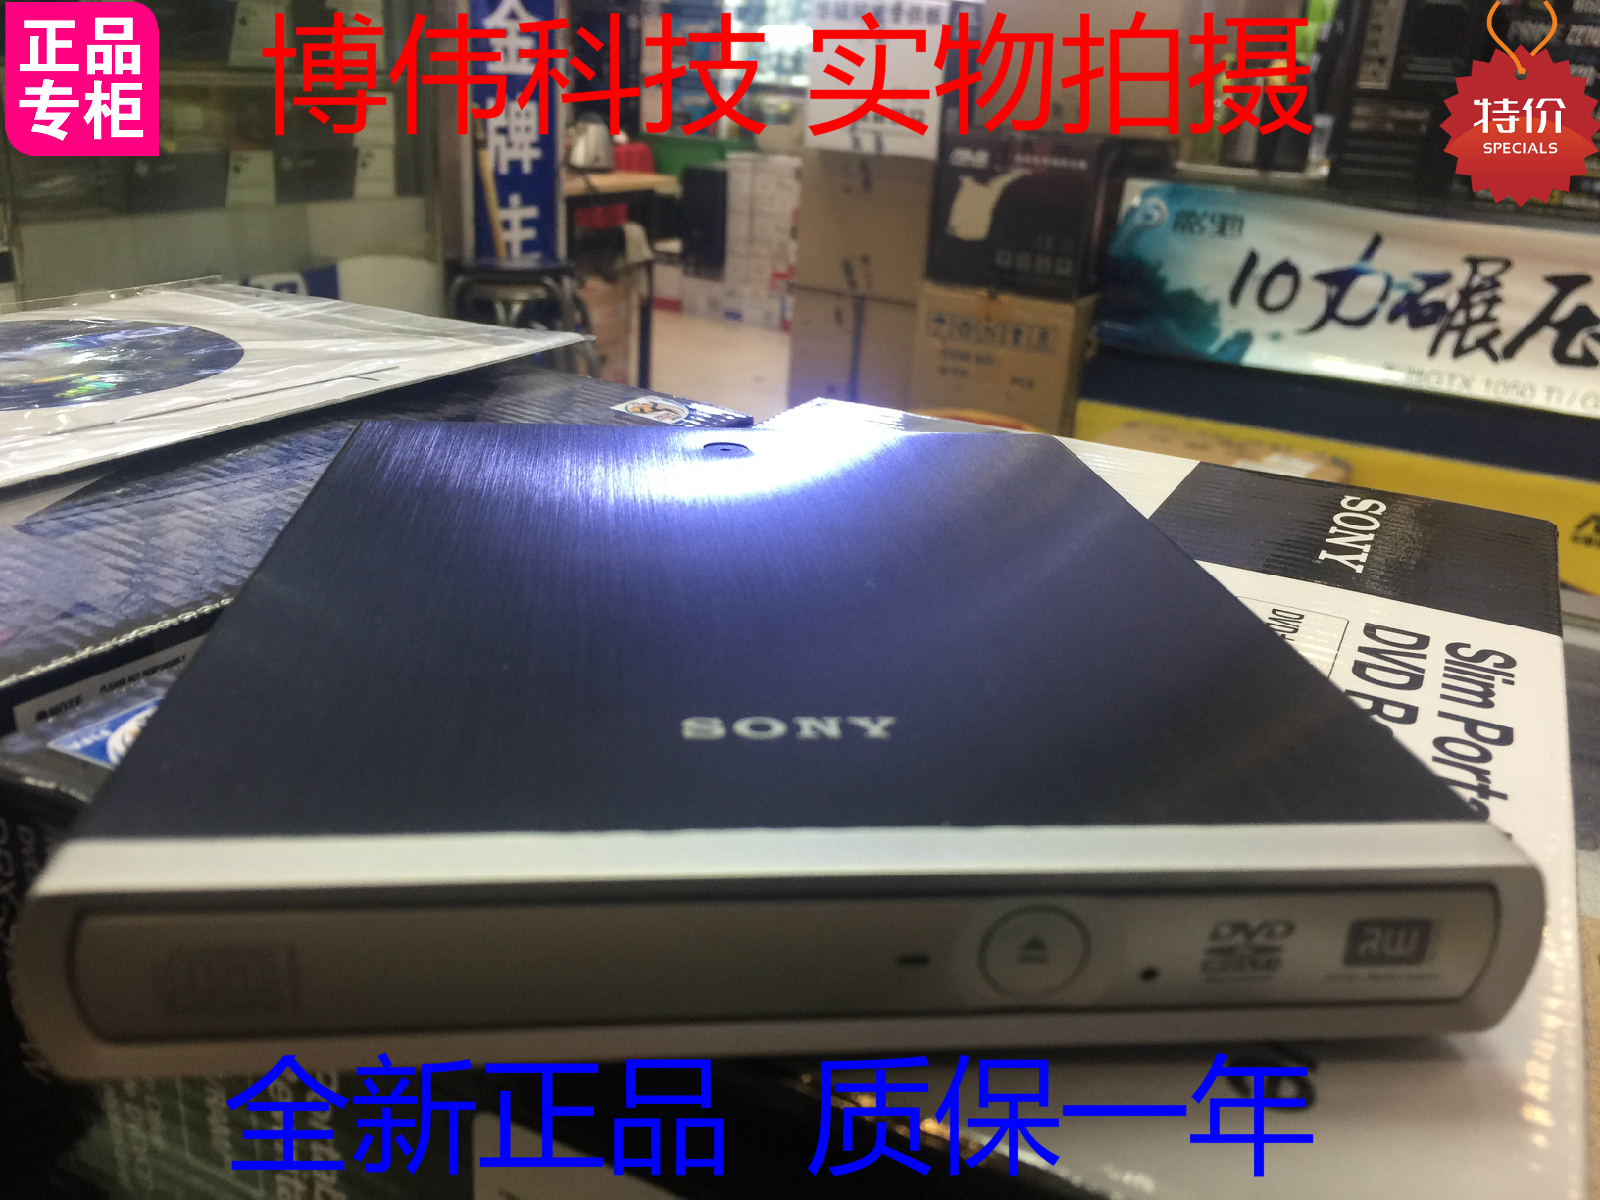 Sony dvd rw drx s70u driver for mac